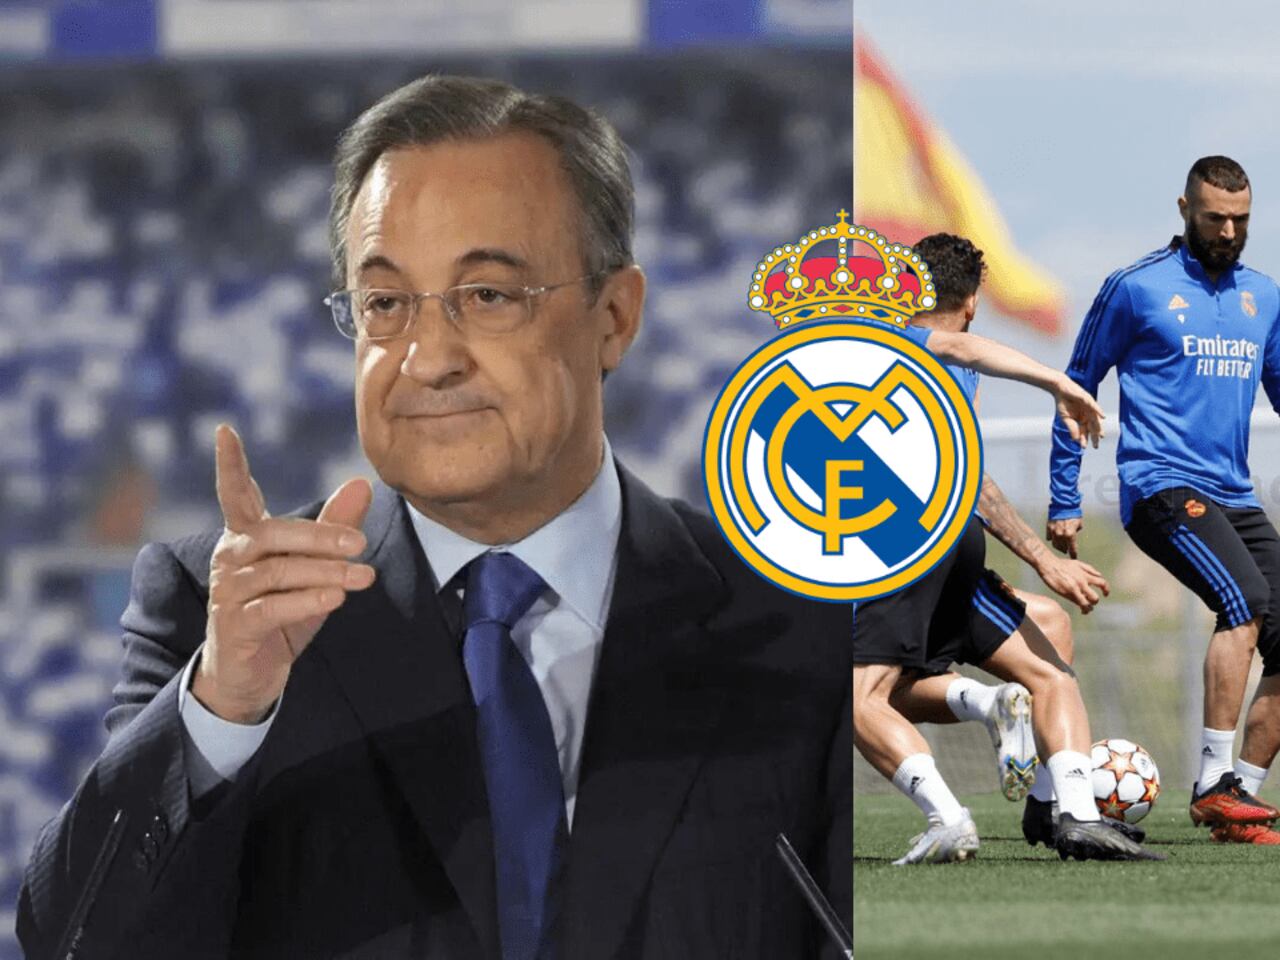 El plan maestro de Florentino Pérez para que Real Madrid gane 150 millones